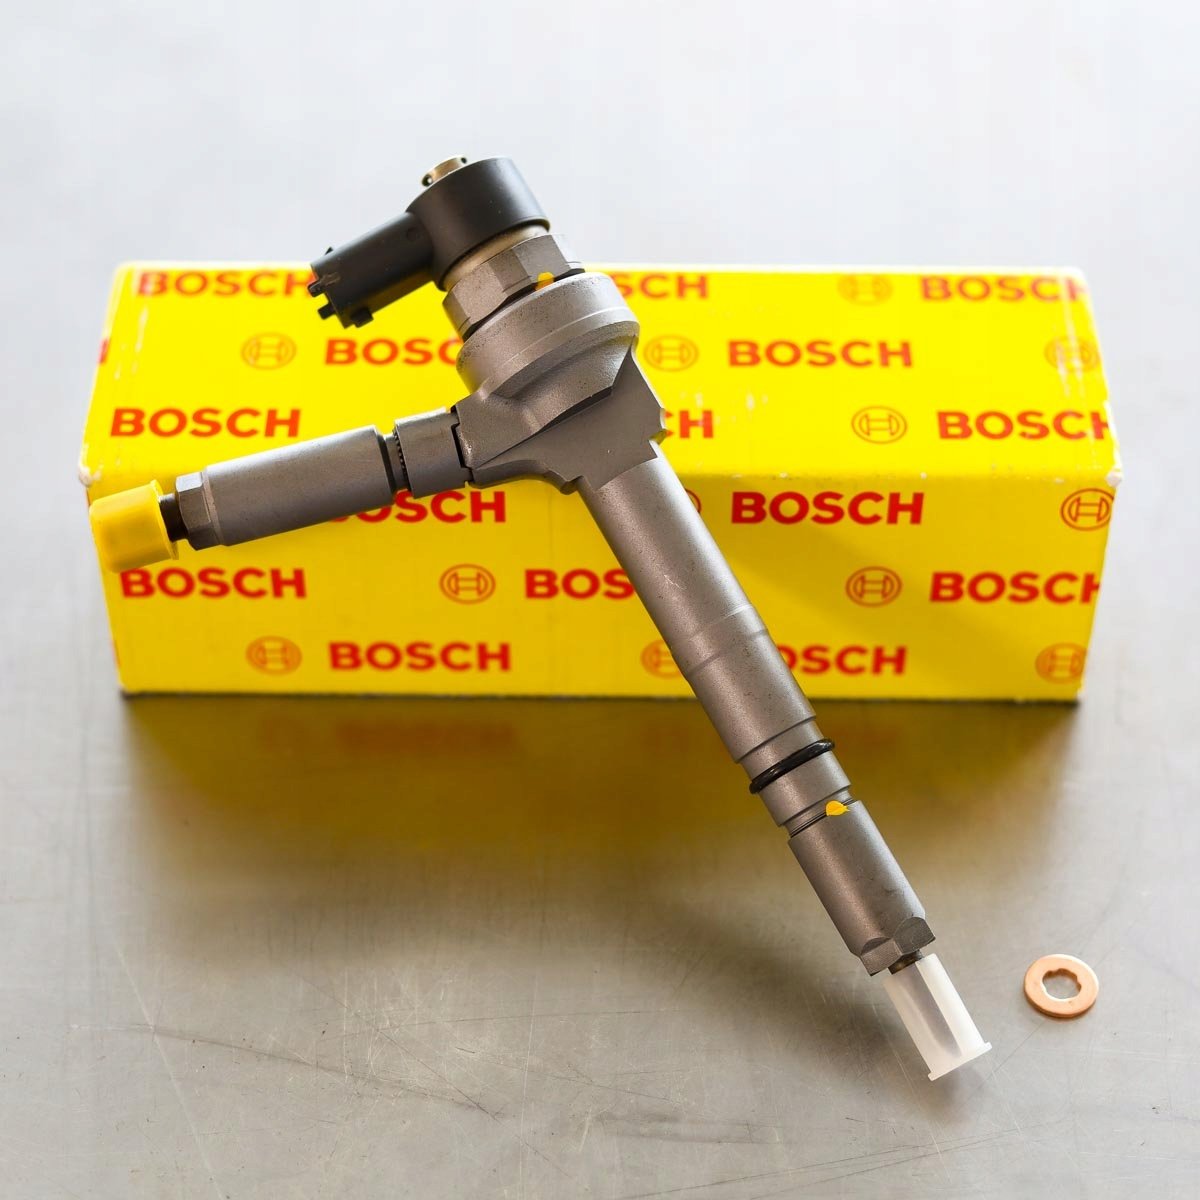 Wtryskiwacz Bosch po naprawie gotowy do nadania do zamawiającego z gwarancją na 2 lata w dobrej cenie